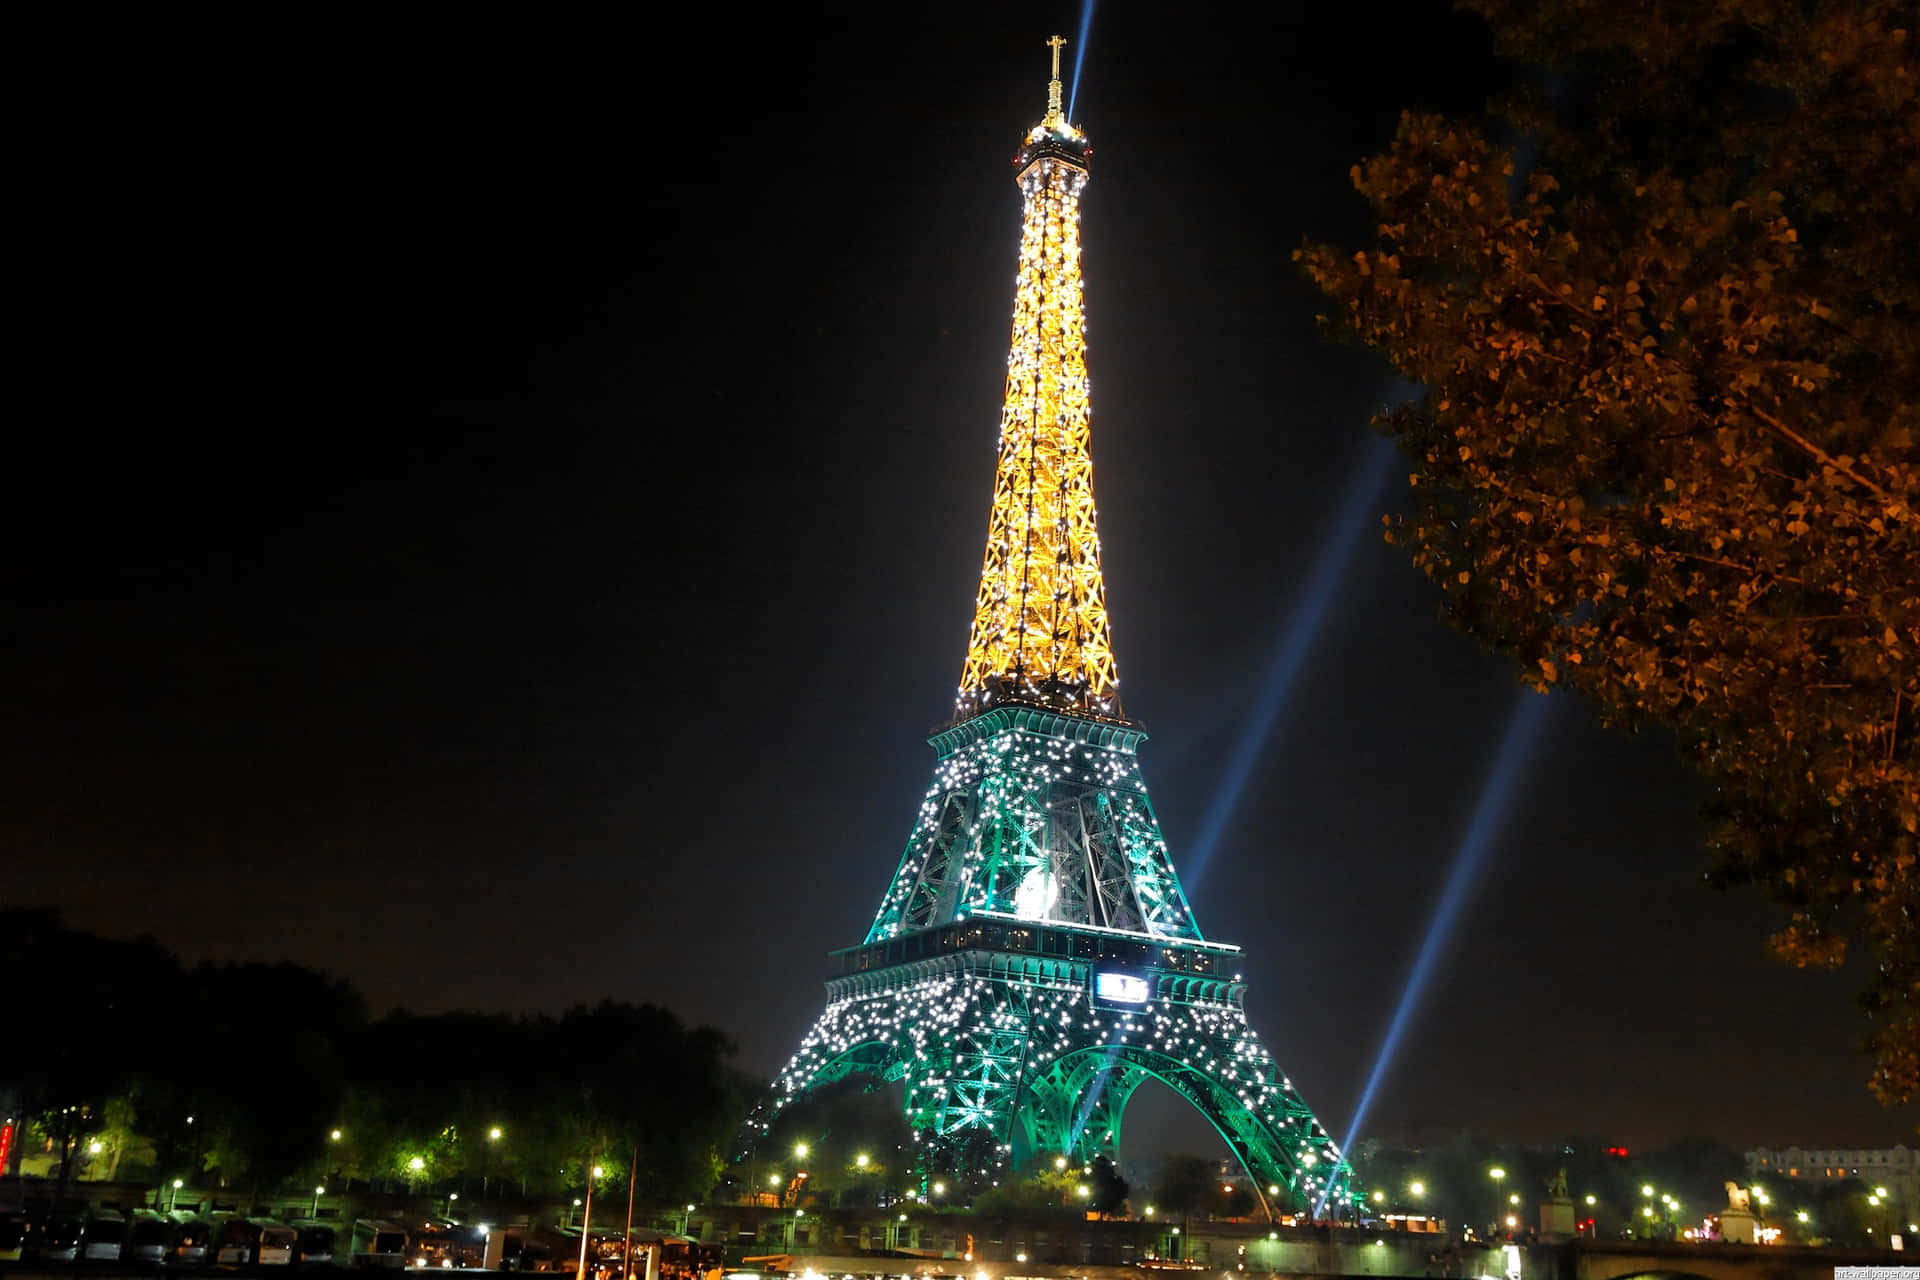 Grönbild Av Eiffeltornet På Natten.